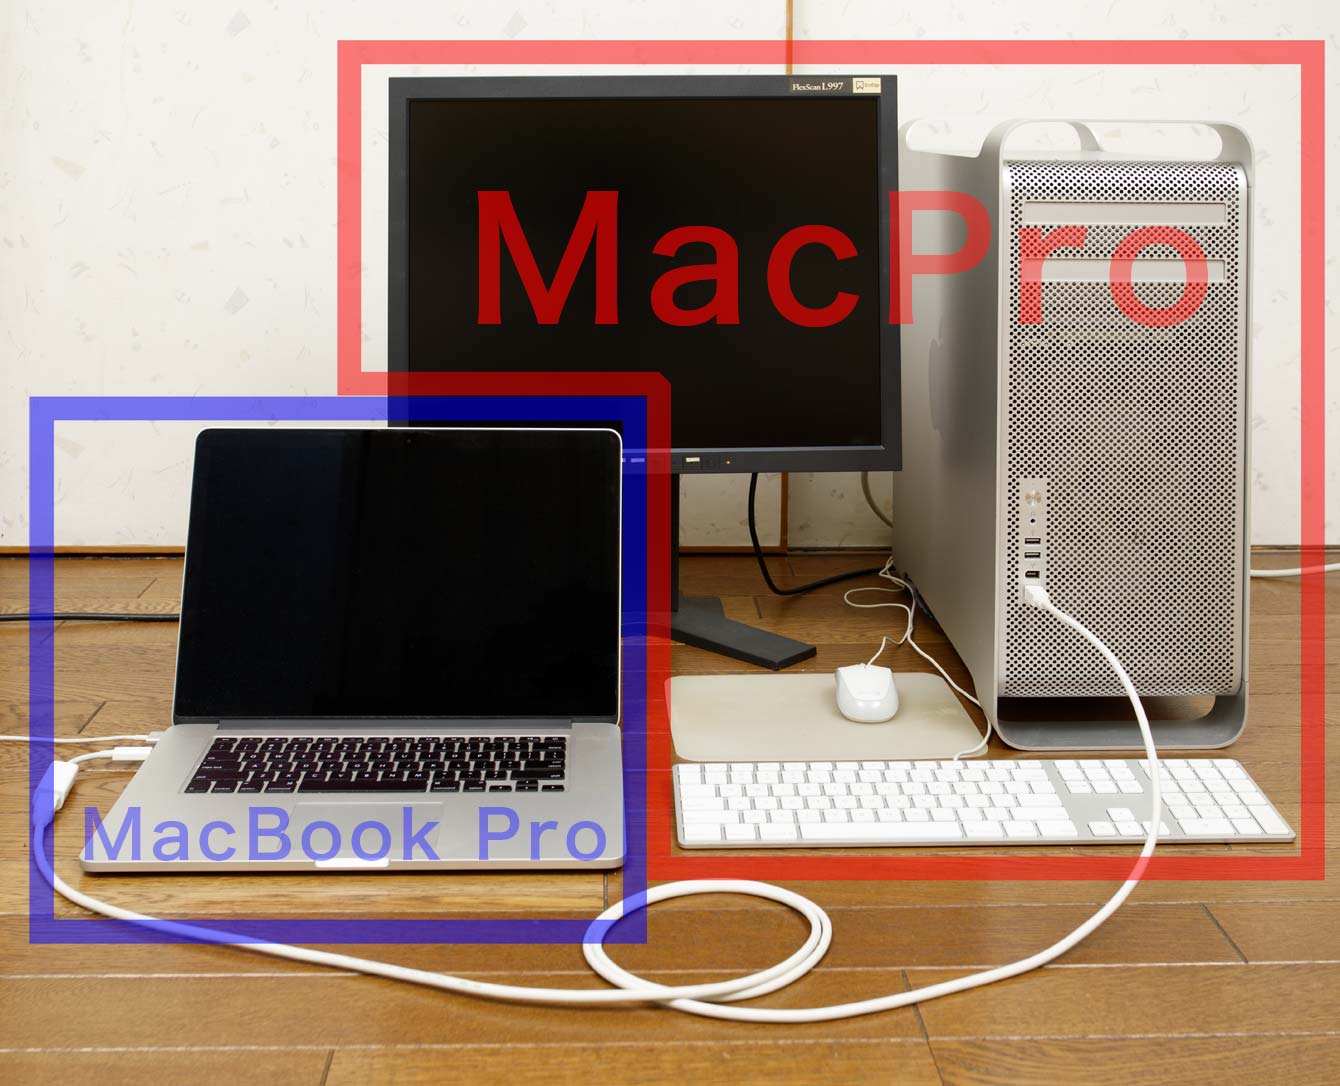 接続されている２台のMac